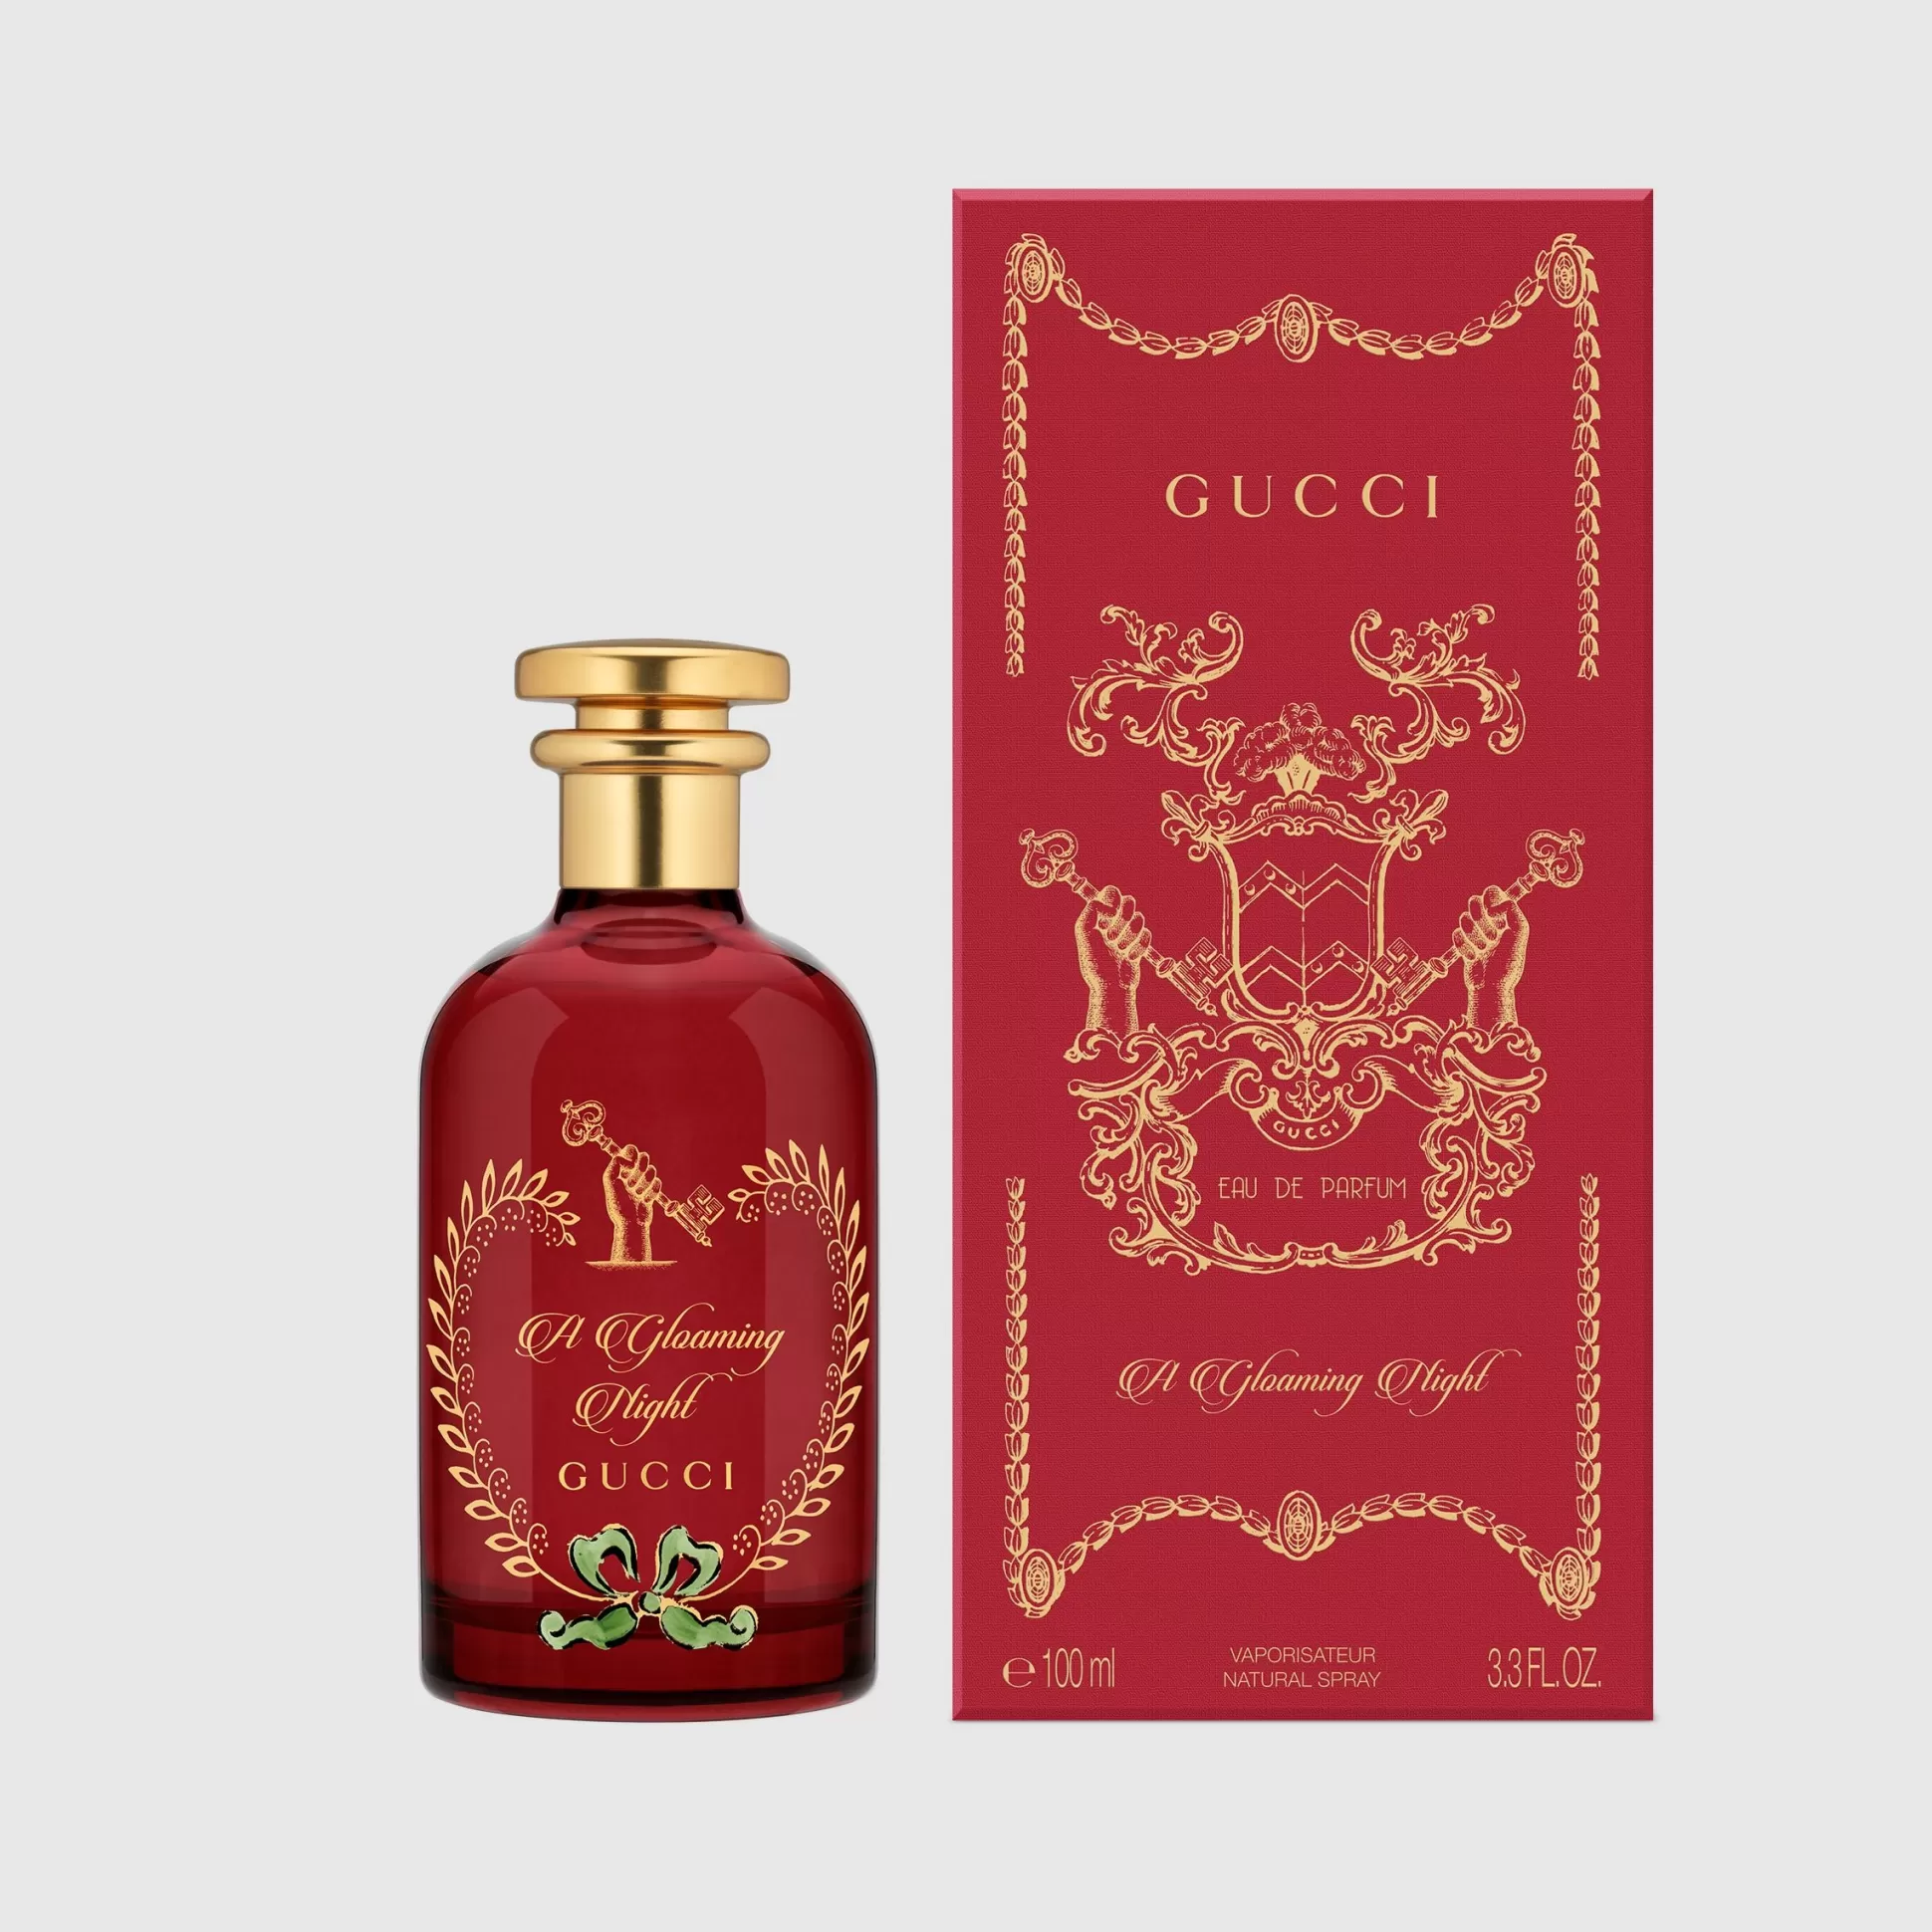 GUCCI The Alchemist'S Garden, A Gloaming Night, 100 Ml, Eau De Parfum- Men'S Fragrances